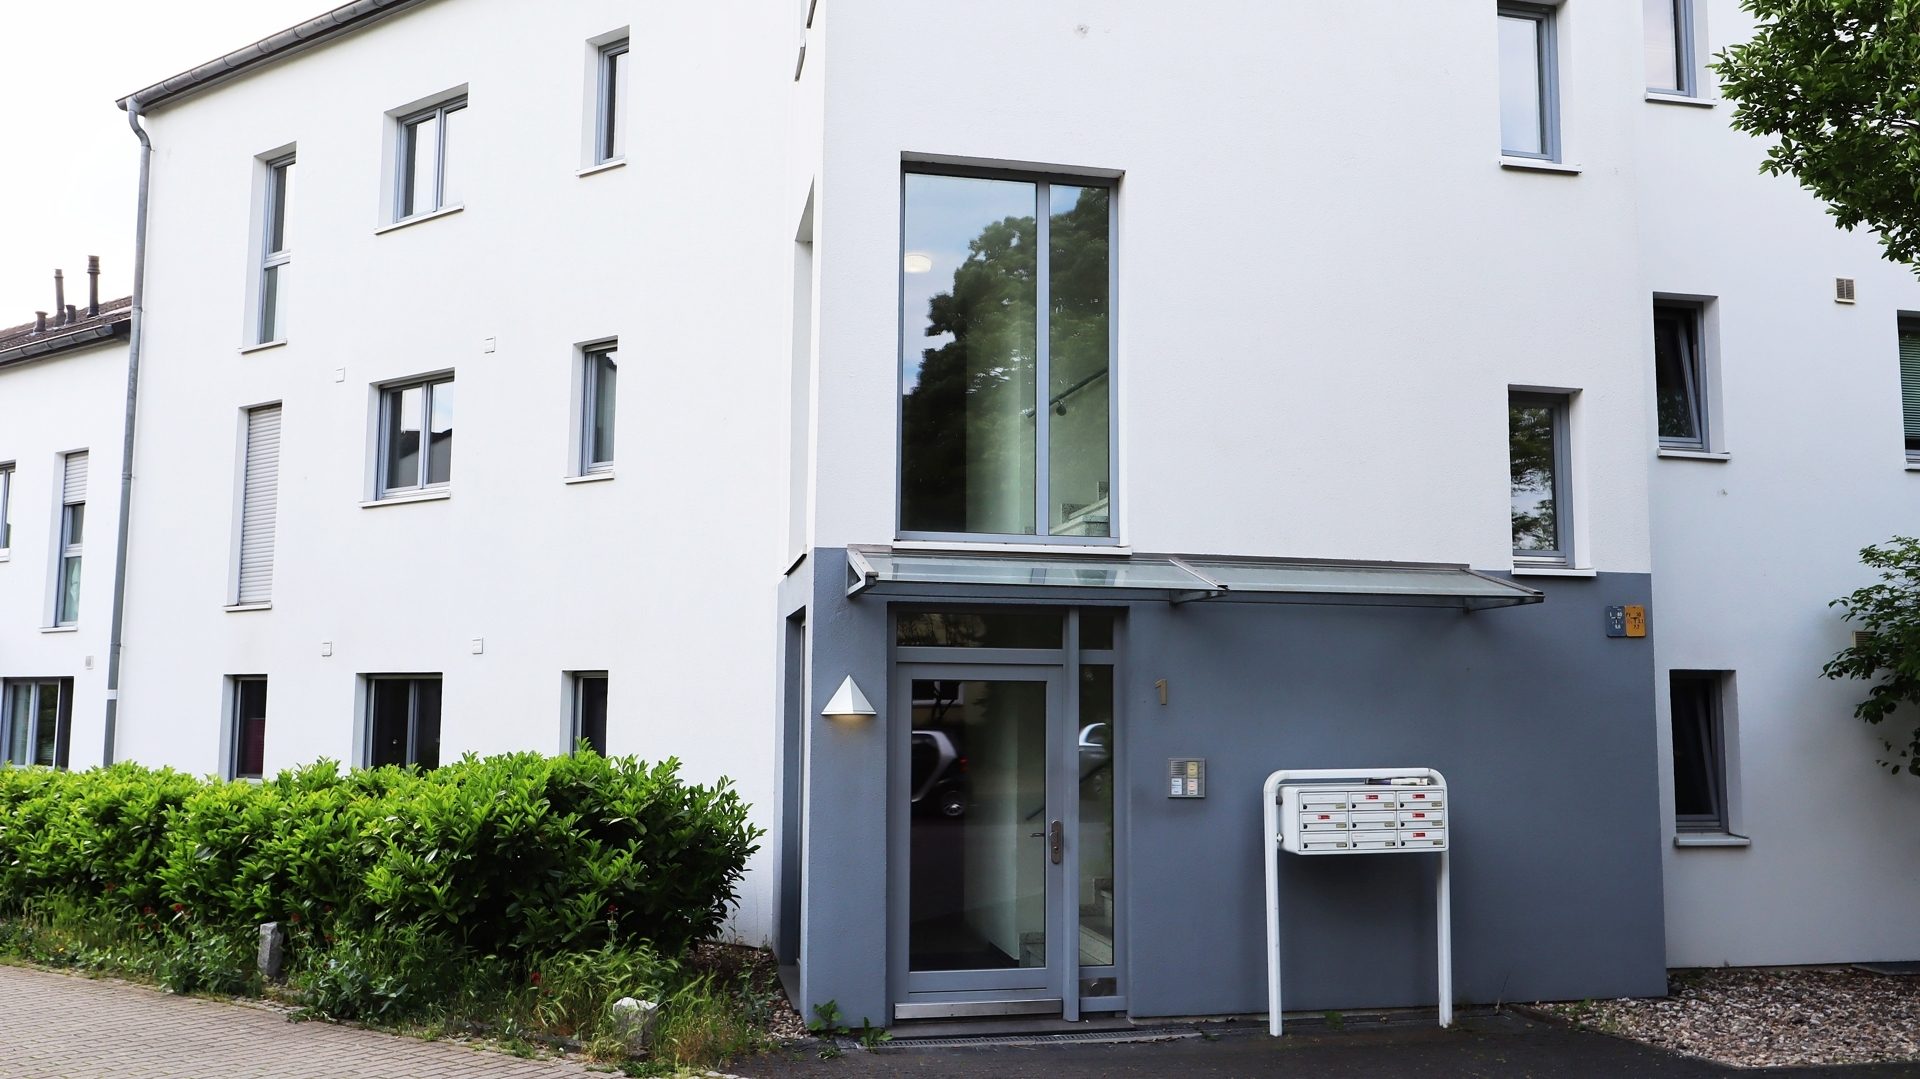 Böcker Wohnimmobilien - Immobilienangebot - Düsseldorf - Alle - 2-Zimmerwohnung in guter Lage von Kaiserswerth! EBK! Tiefgarage